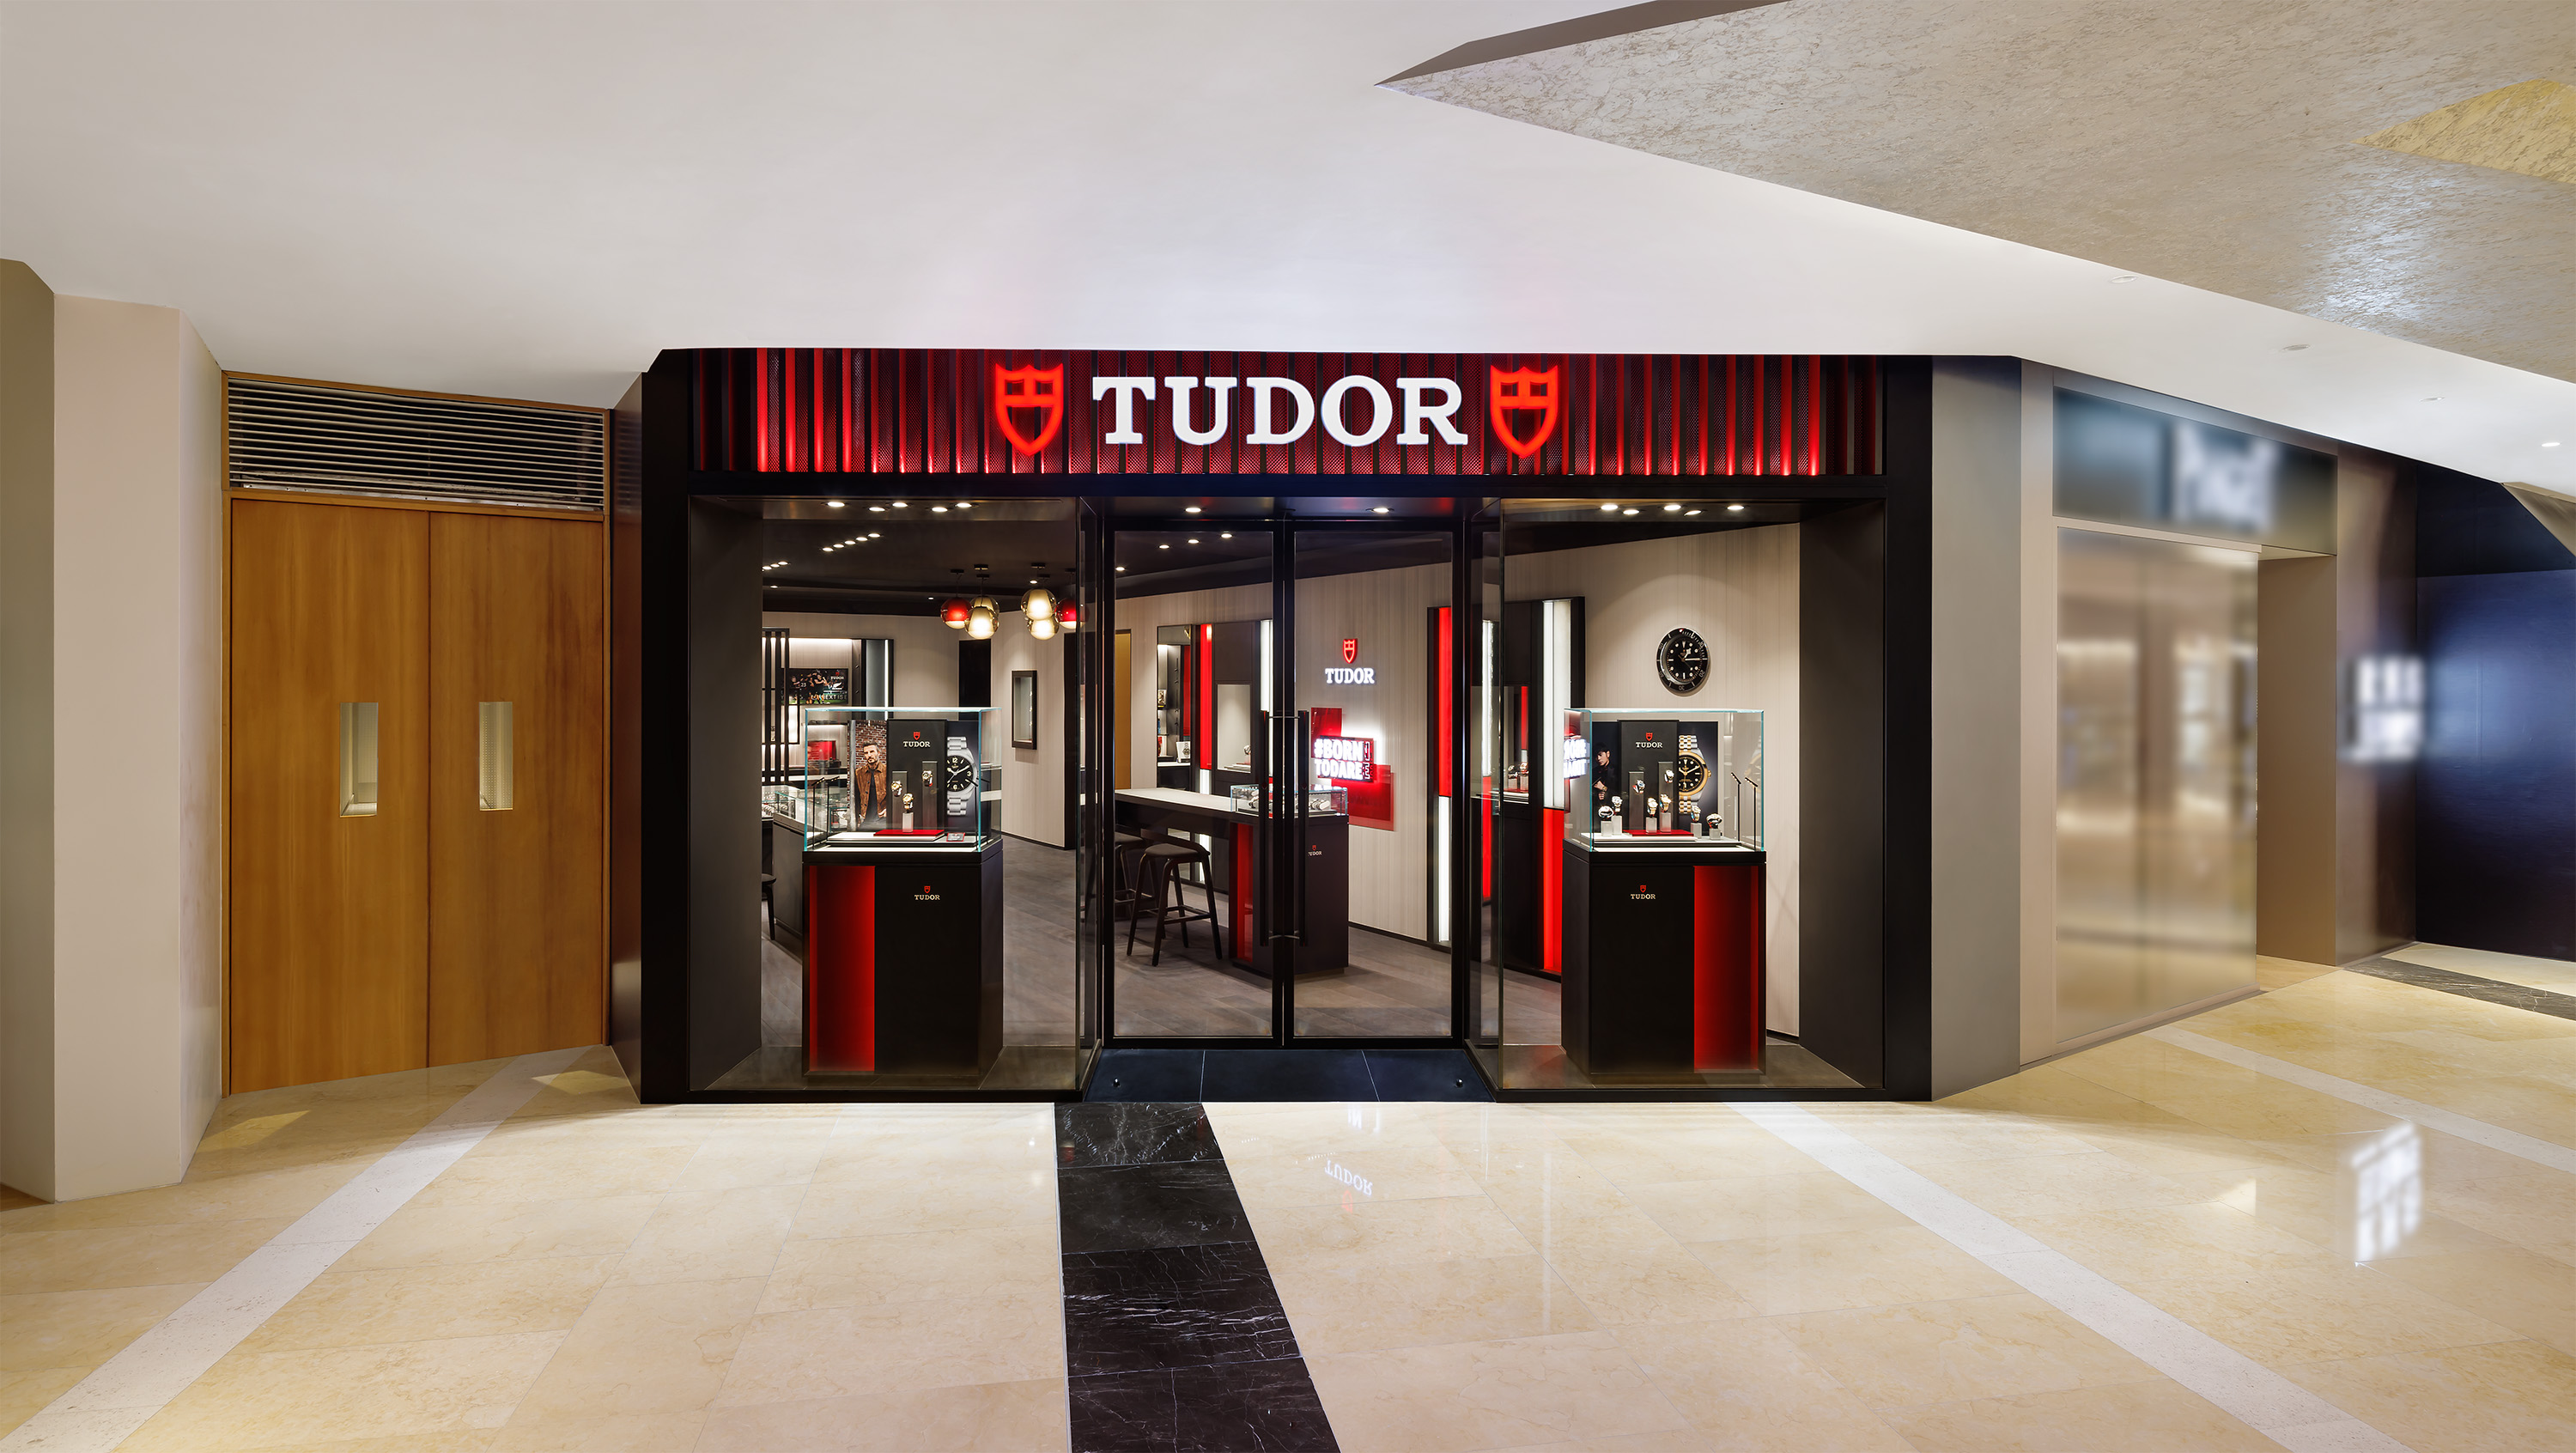 Tudor - Europe Watch Company